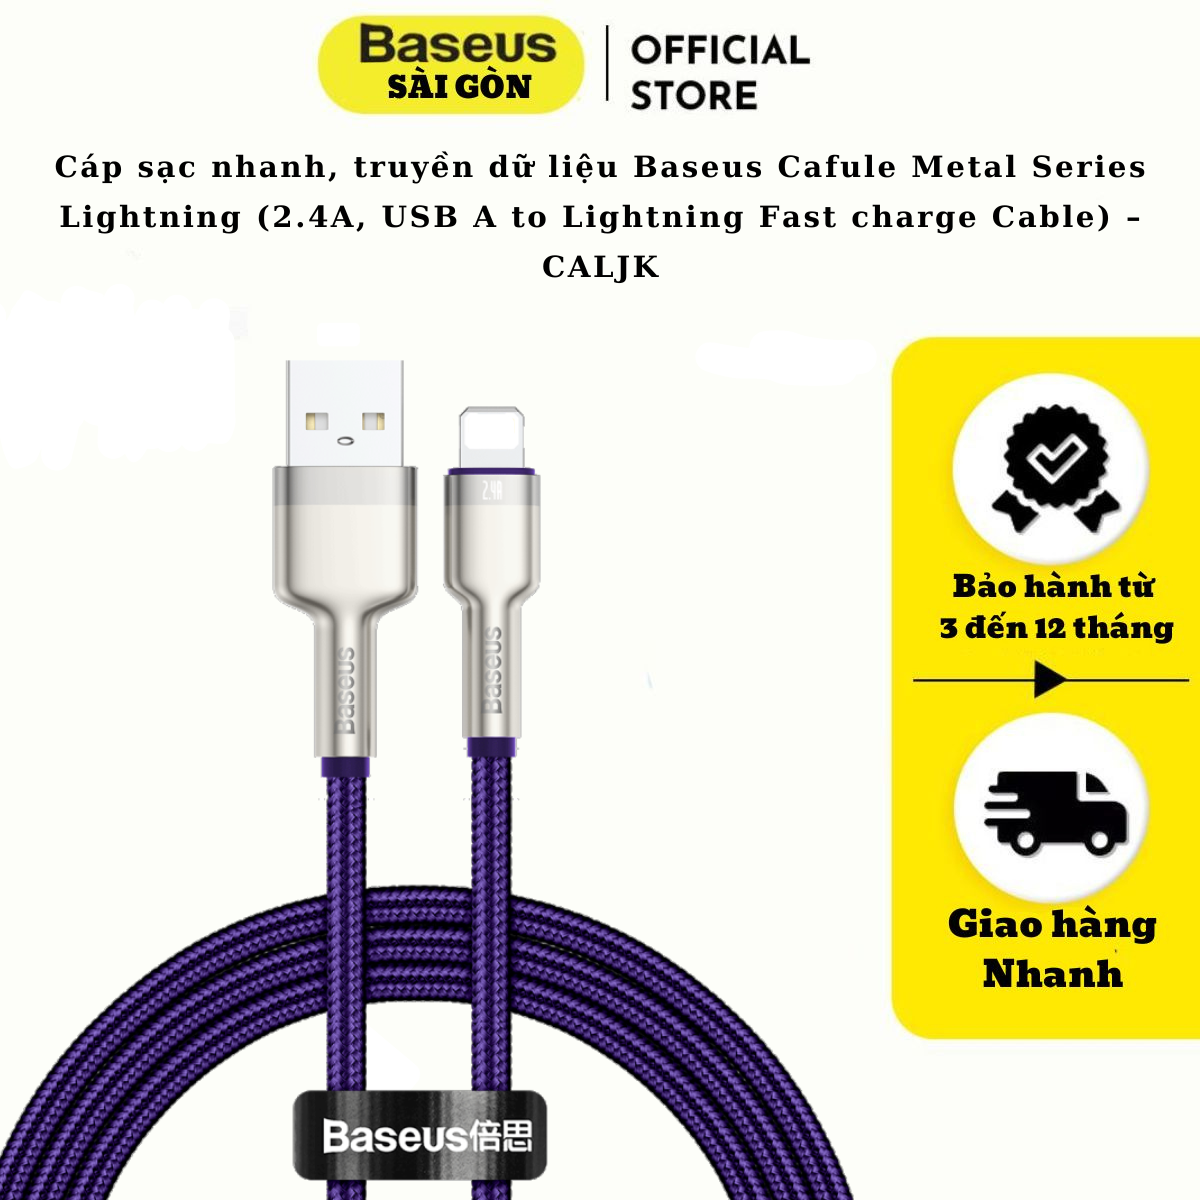 Cáp sạc nhanh, truyền dữ liệu Baseus Cafule Metal Series Light-ning dùng cho i-Phone/ iPad (2.4A, USB A to Light-ning Fast charge Cable) – CALJK- Hàng chính hãng